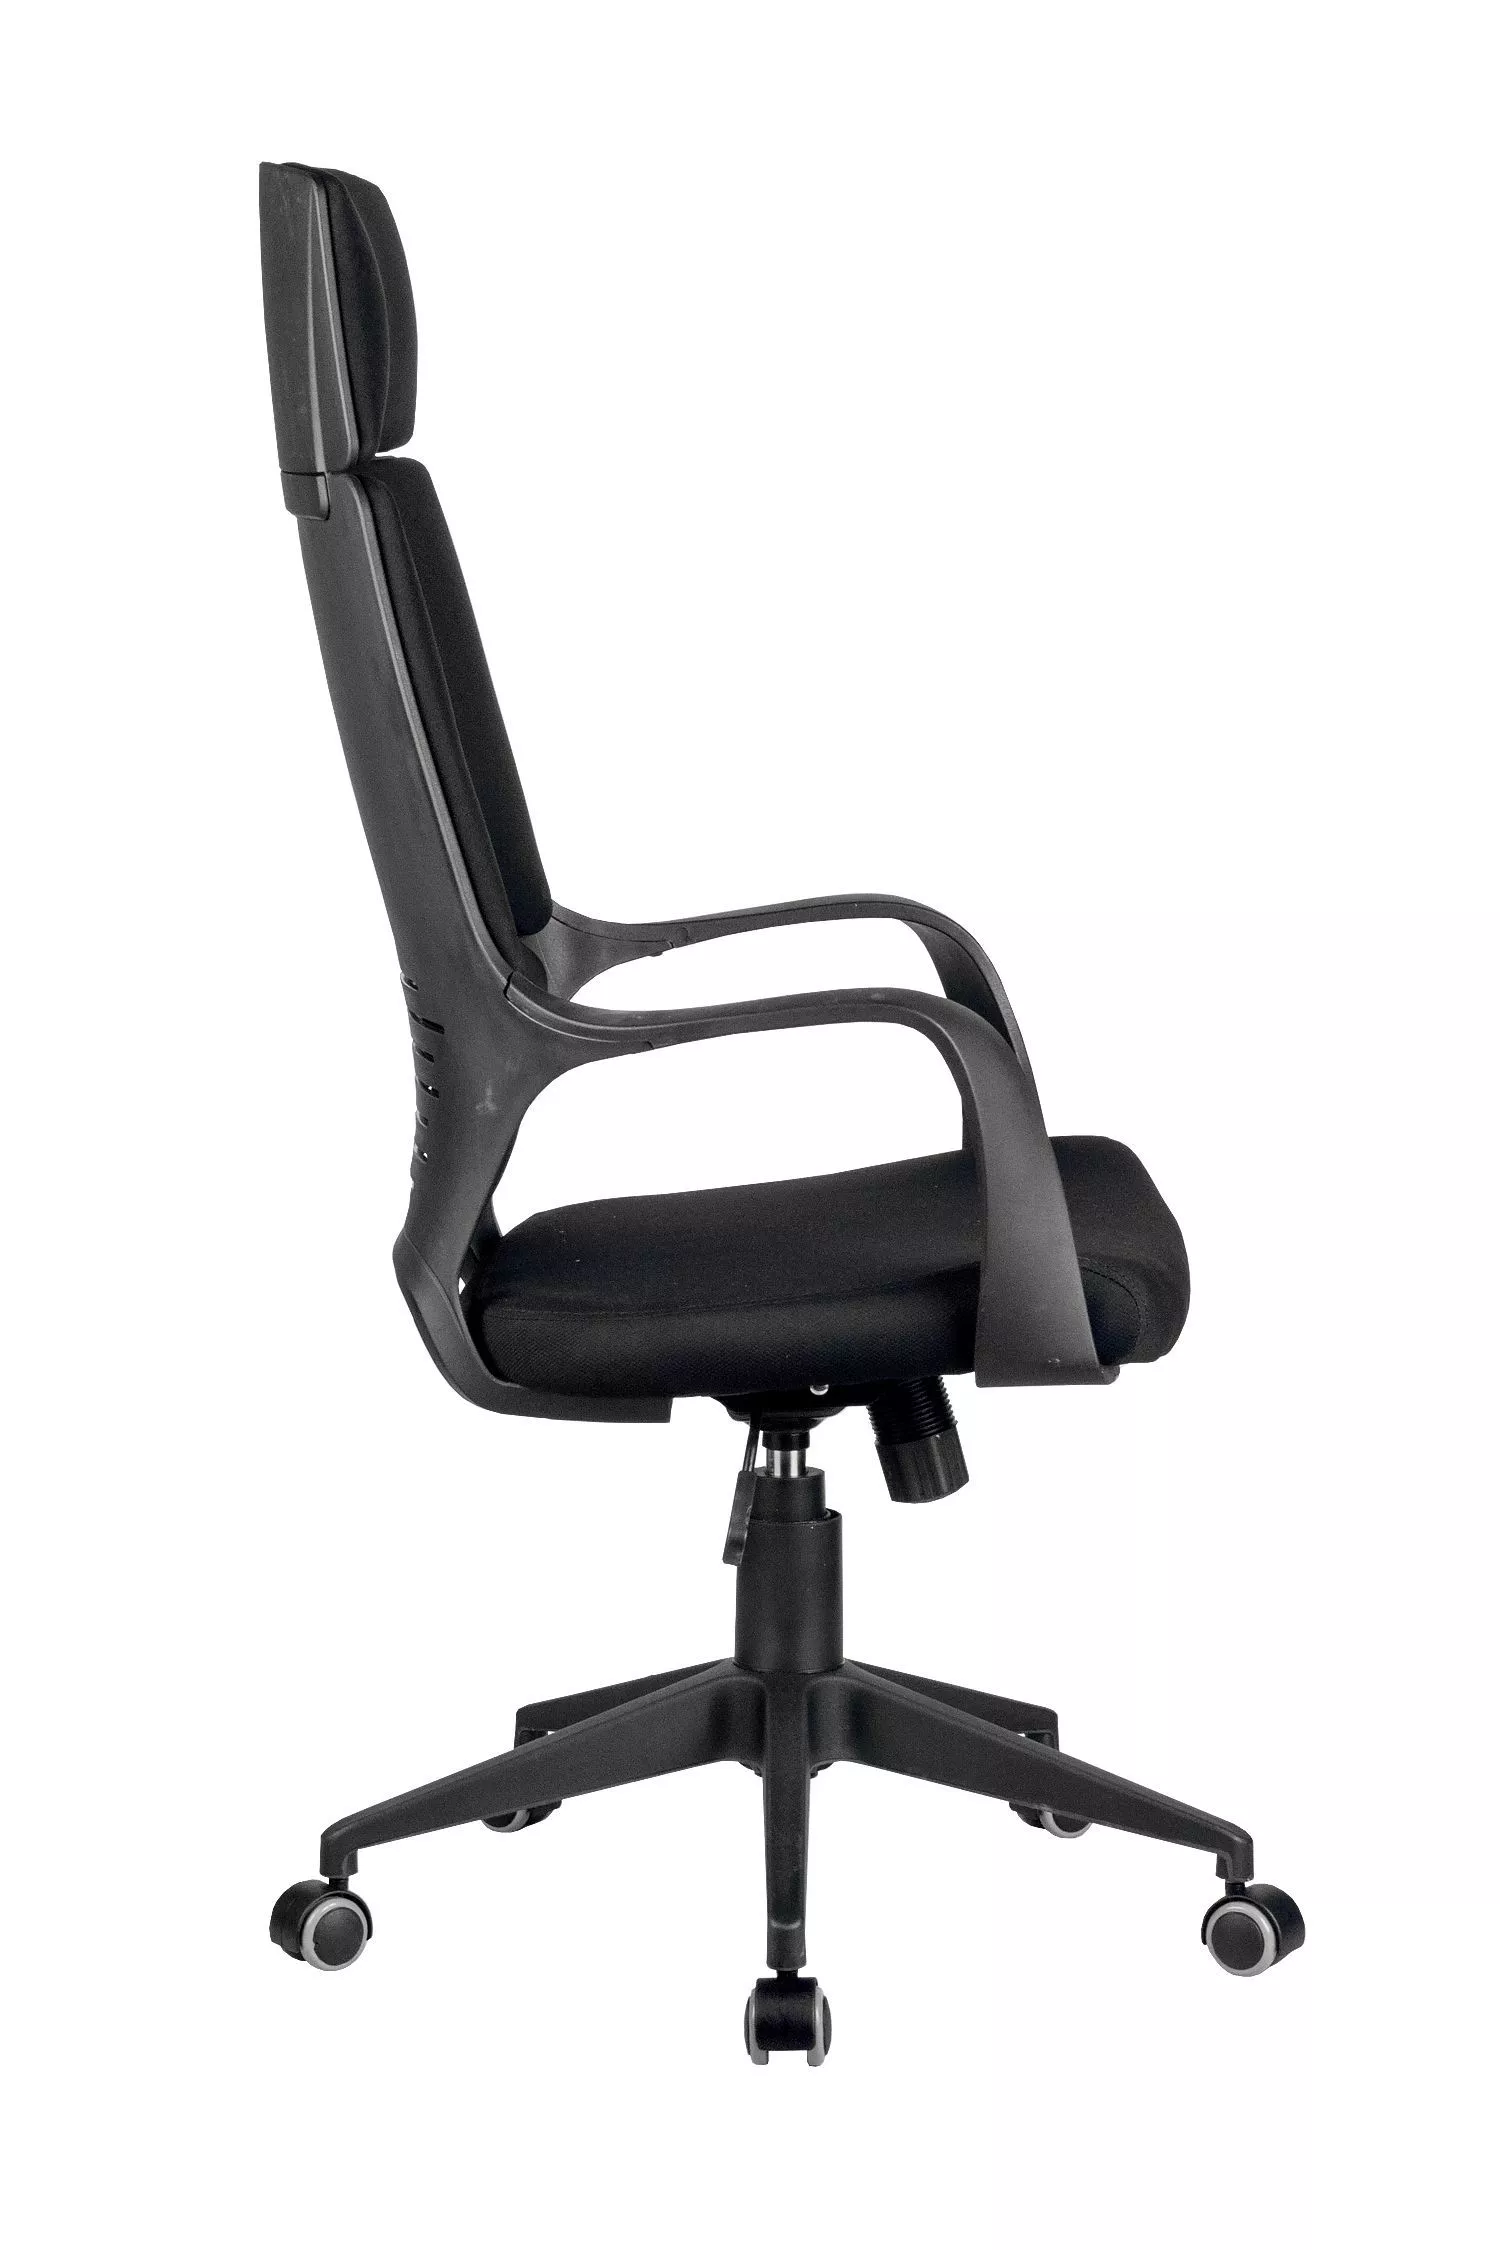 Кресло для персонала Riva Chair Iq Rv 8989 черный